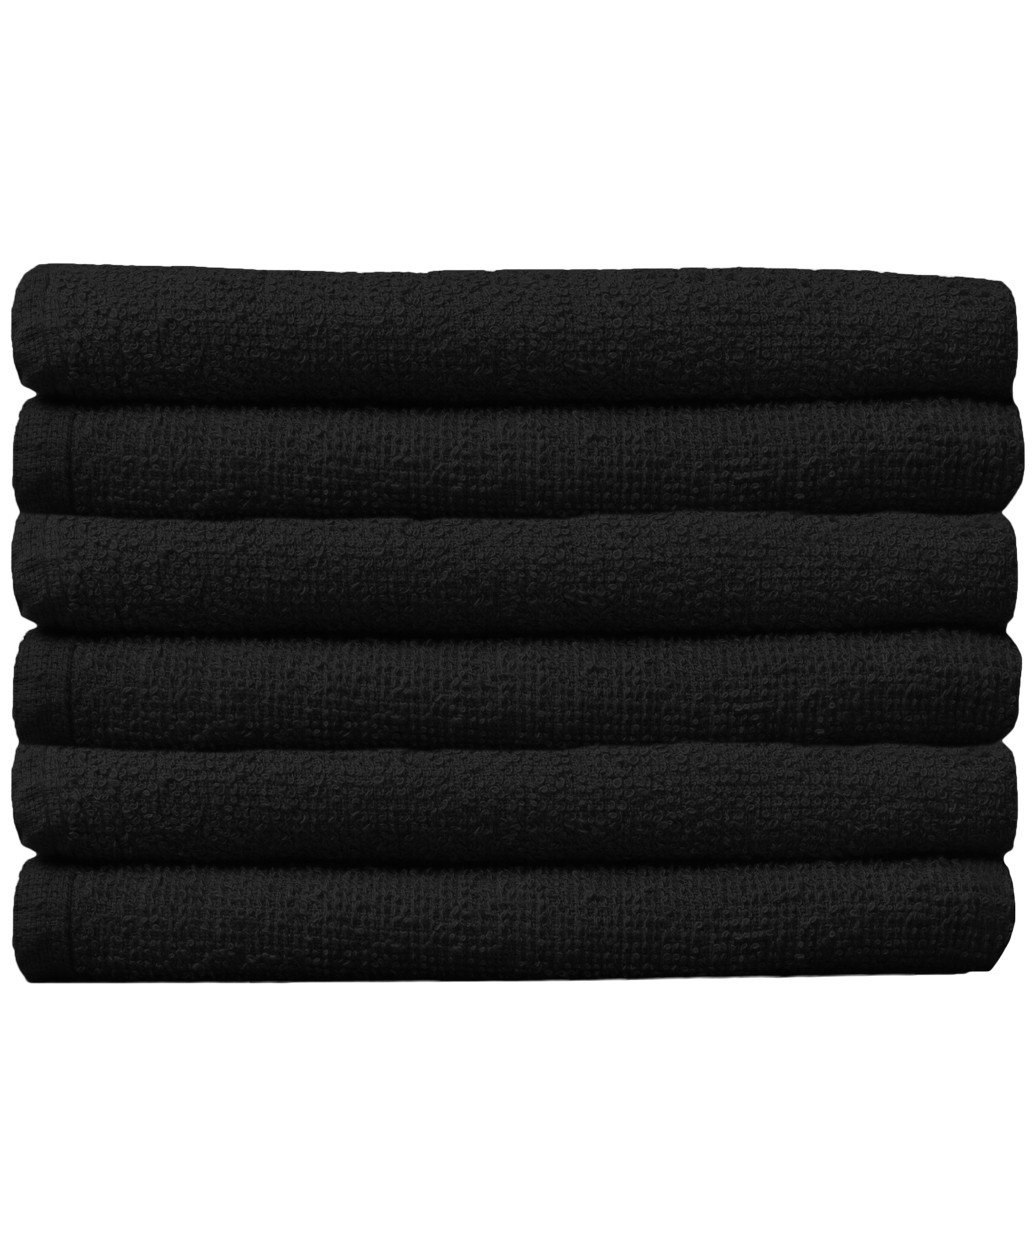 Bleach Resistant Black Towels - 9 Pack